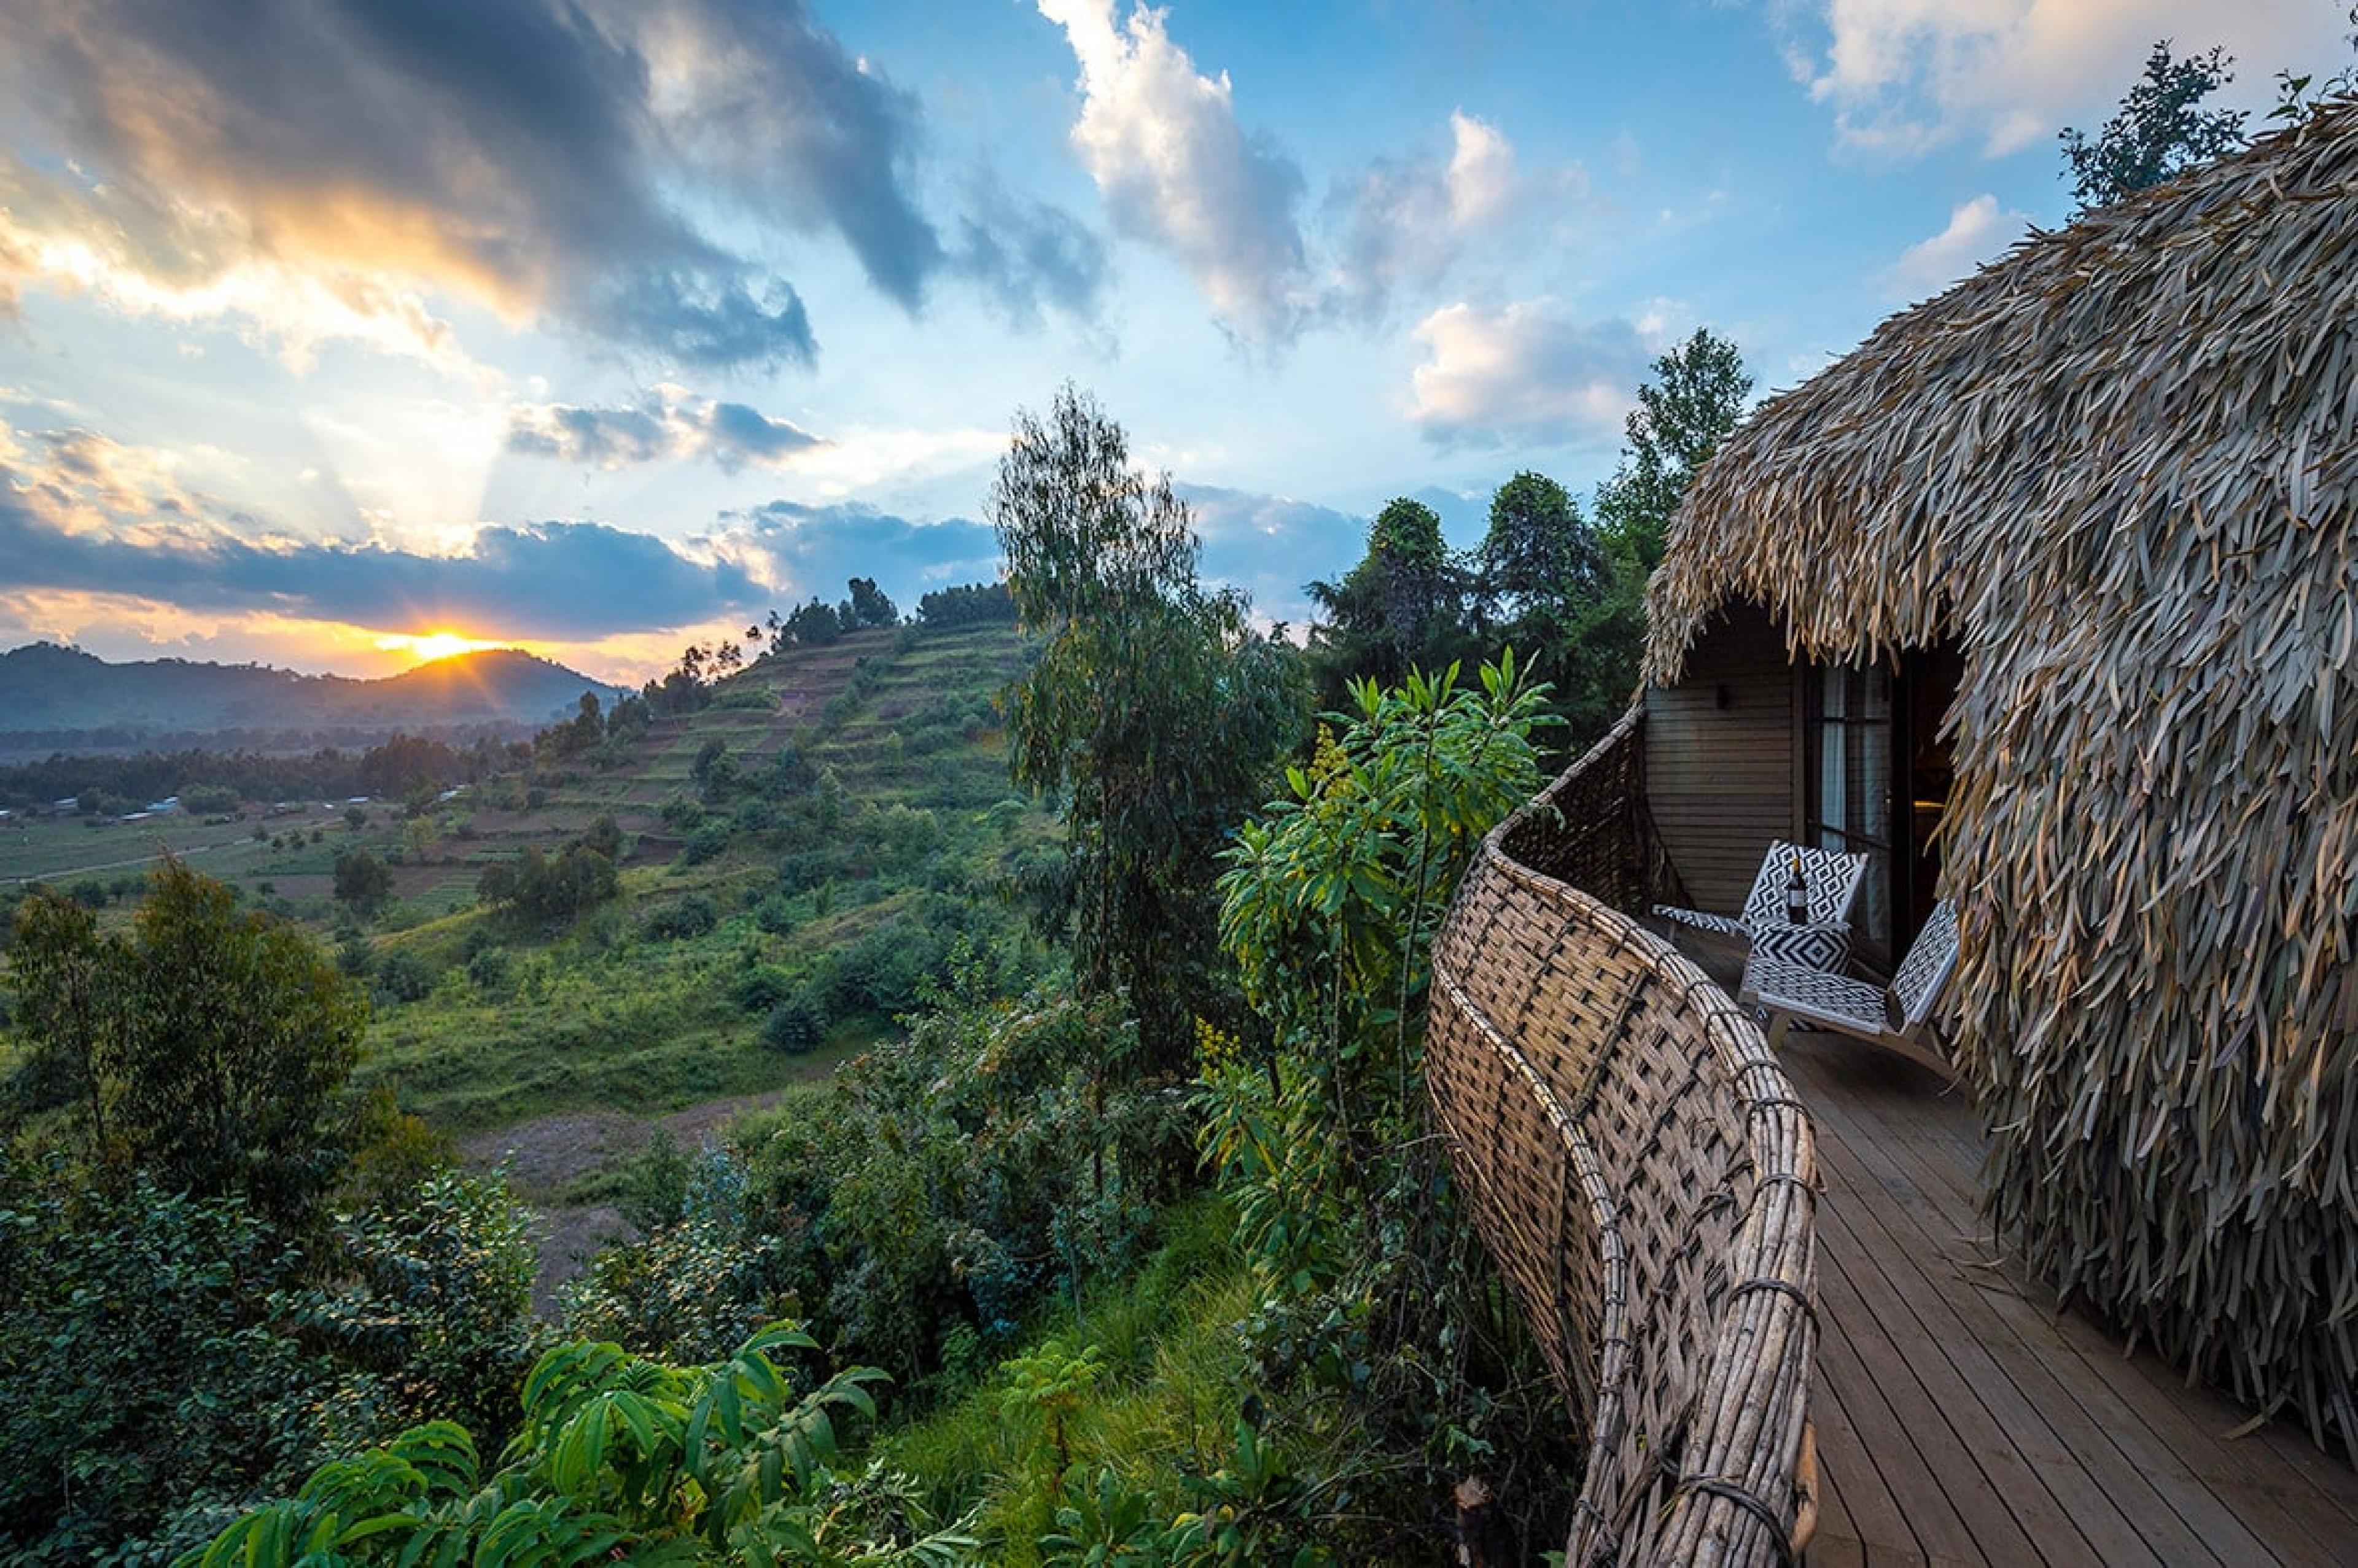 balcony in safari lodge overlooking lush green hillside